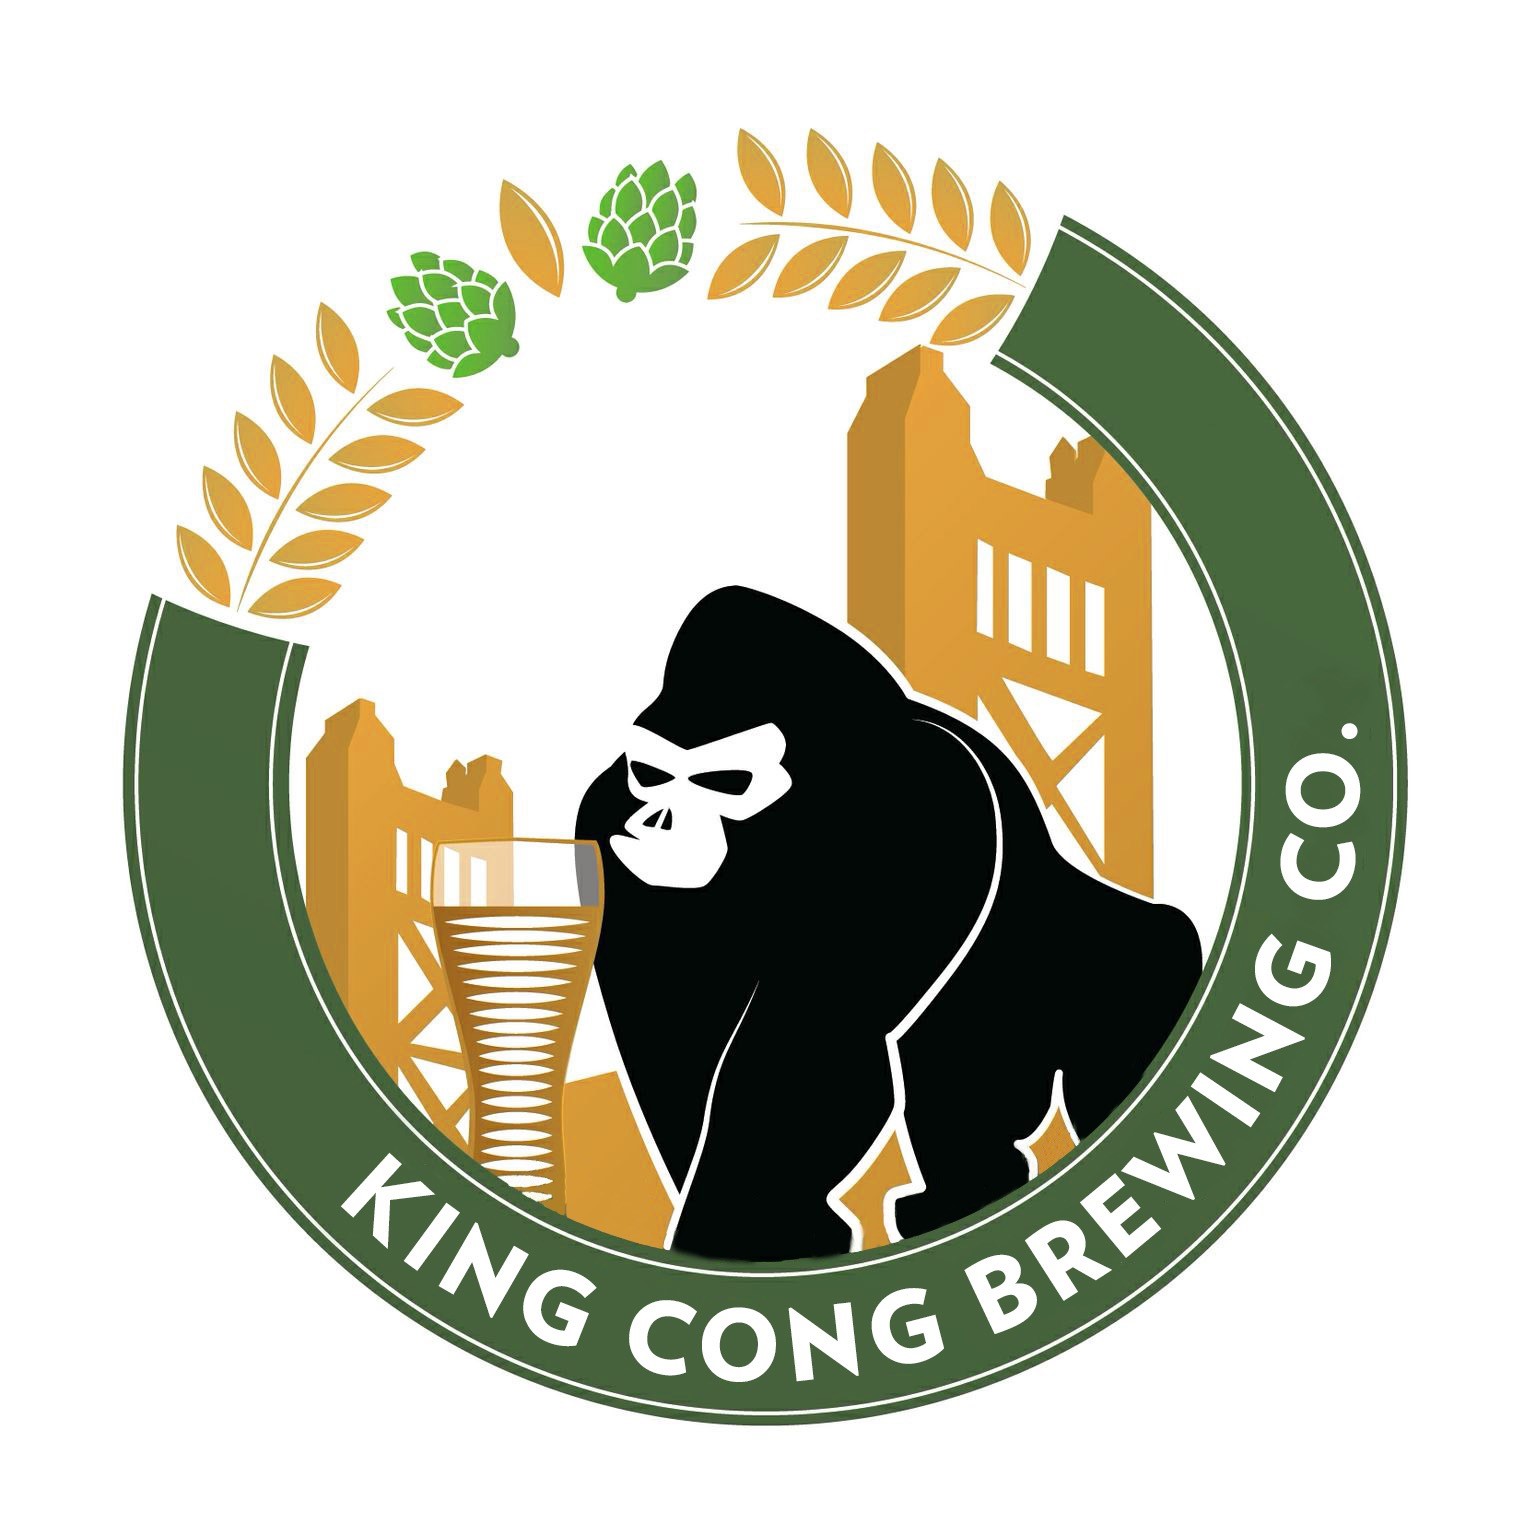 King Kong Brewing Company logo